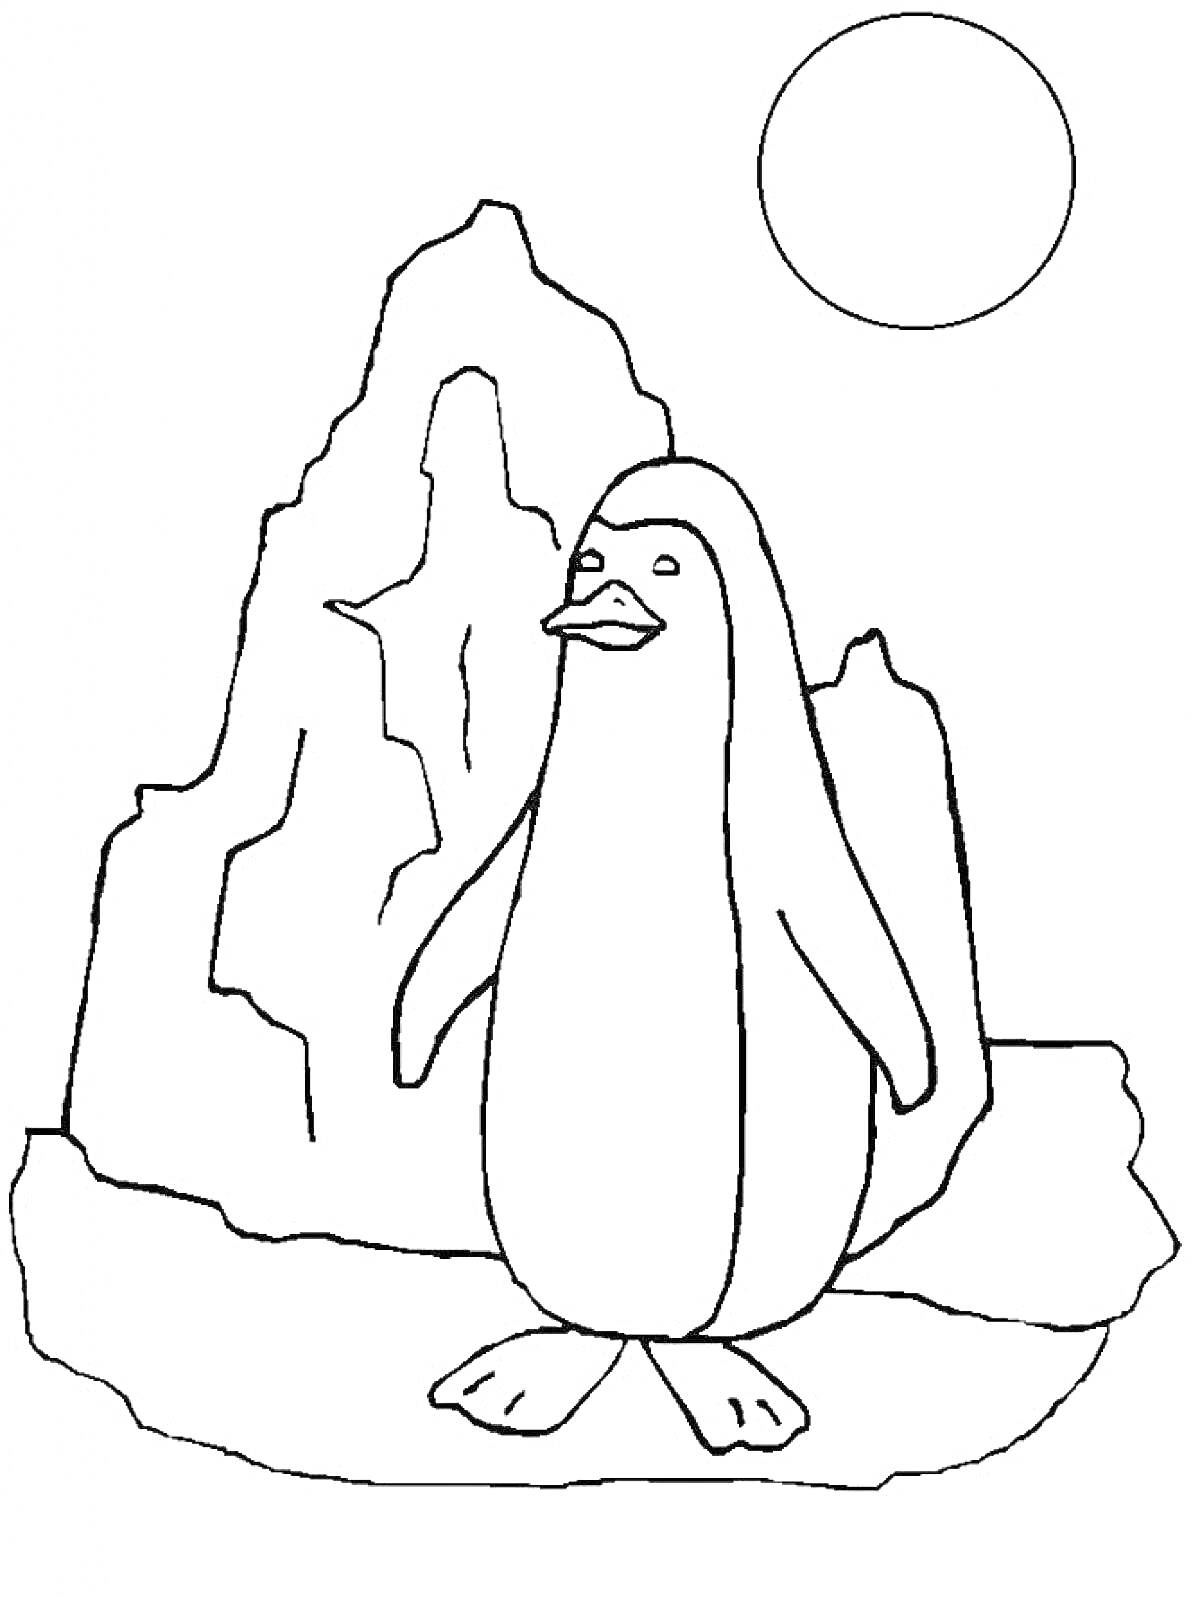  Пингвин на льдине перед айсбергом и солнцем